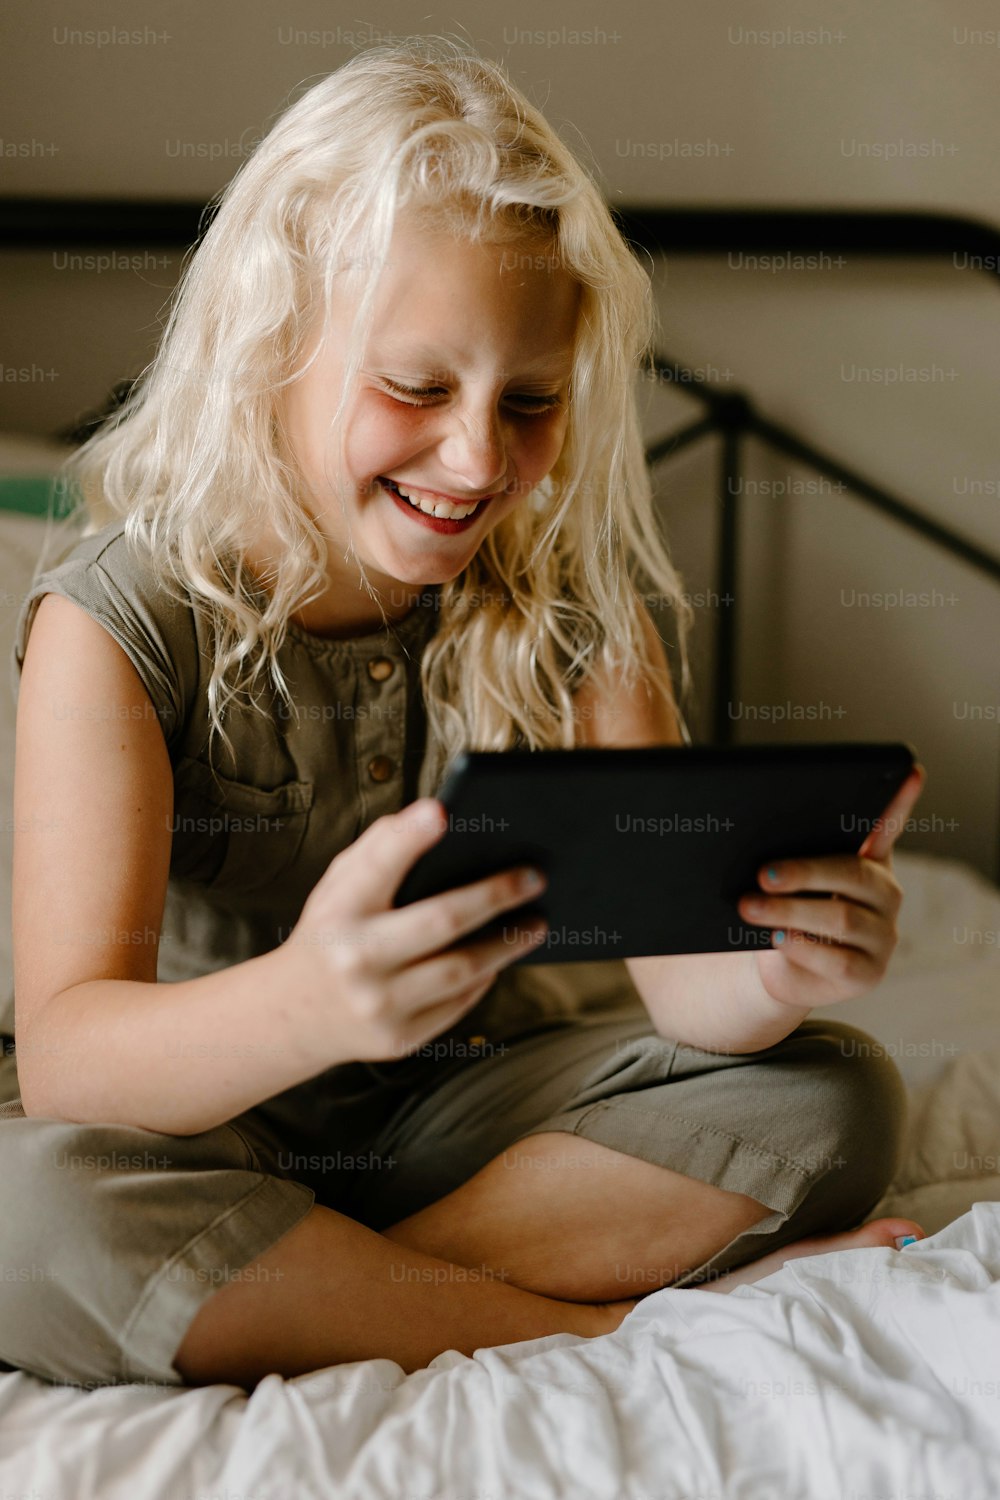 Una niña sentada en una cama mirando una tableta